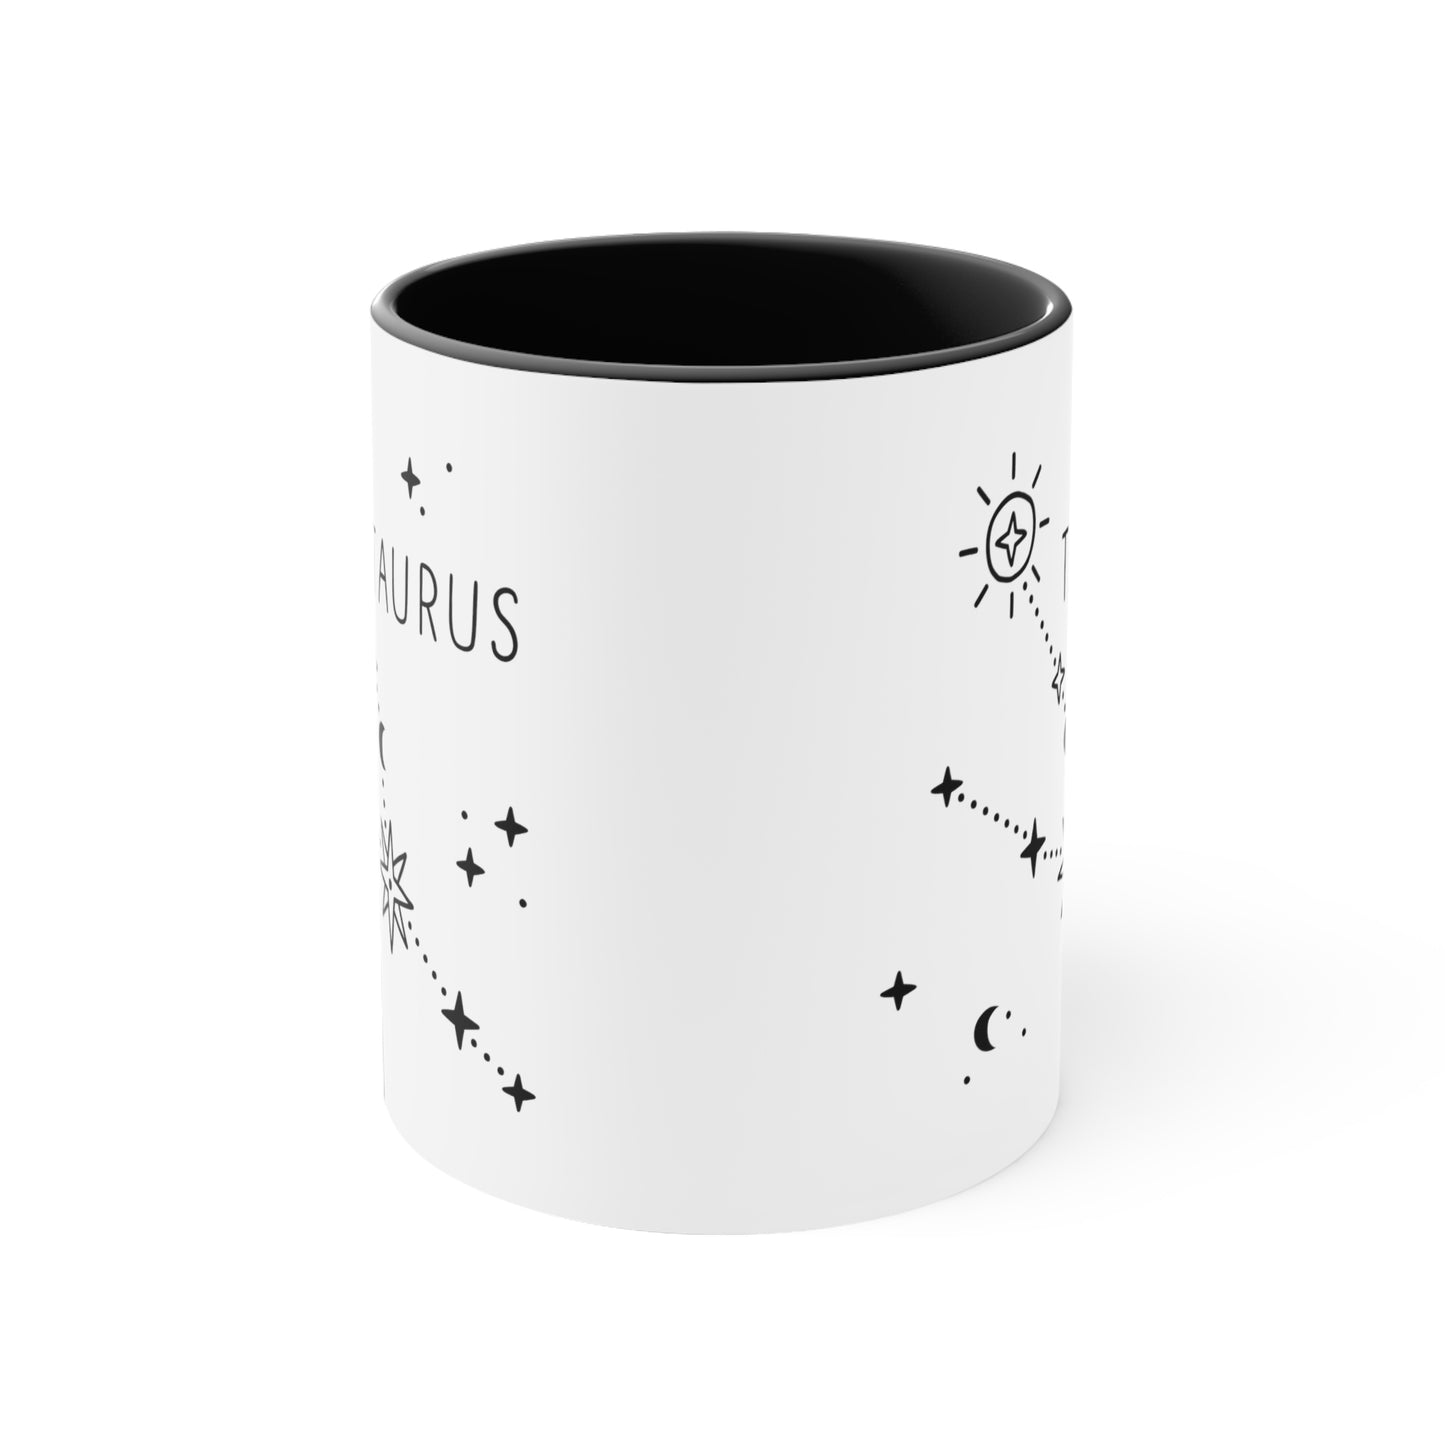 Taurus constellation coffee mug